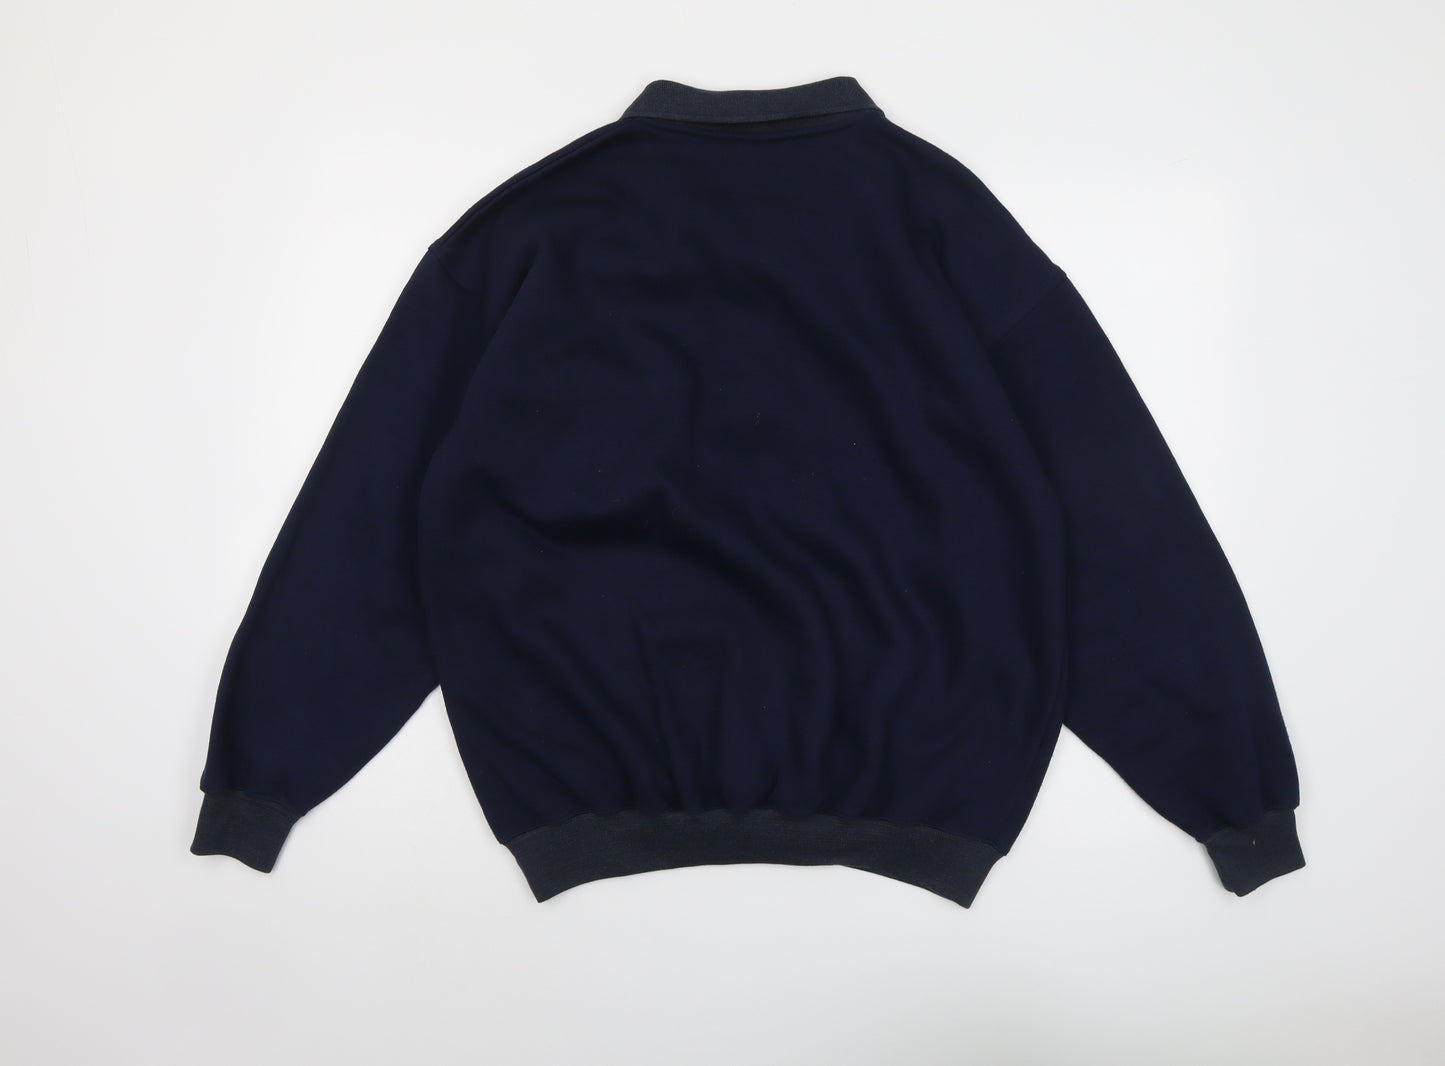 C&A Mens Blue Cotton Henley Sweatshirt Size L